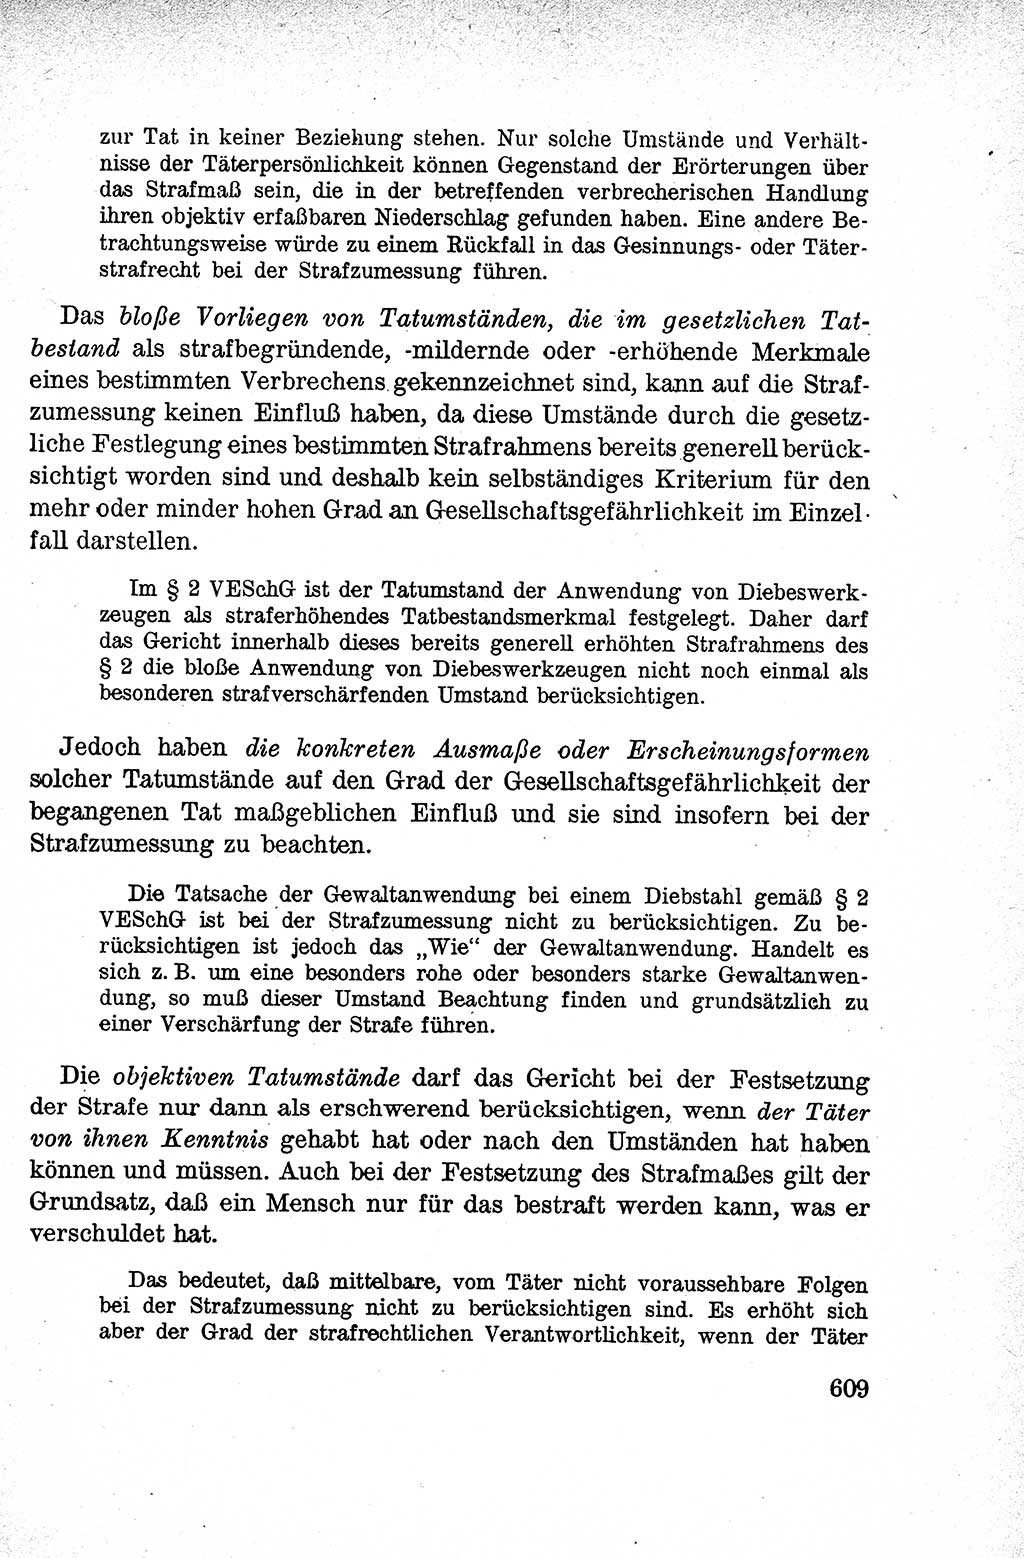 Lehrbuch des Strafrechts der Deutschen Demokratischen Republik (DDR), Allgemeiner Teil 1959, Seite 609 (Lb. Strafr. DDR AT 1959, S. 609)